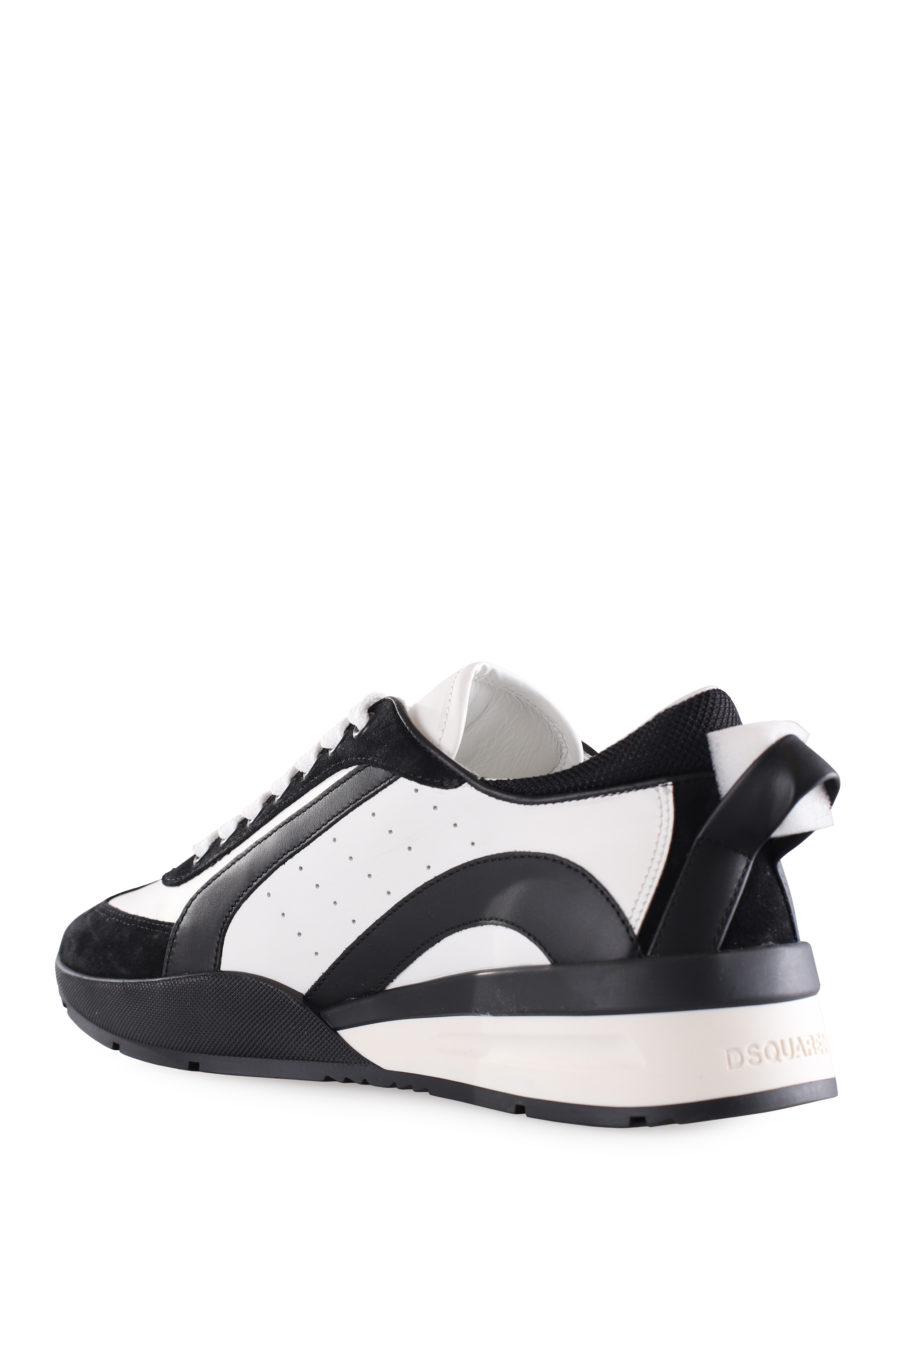 Zapatillas blancas con detalles negros y logo pequeño - IMG 9505